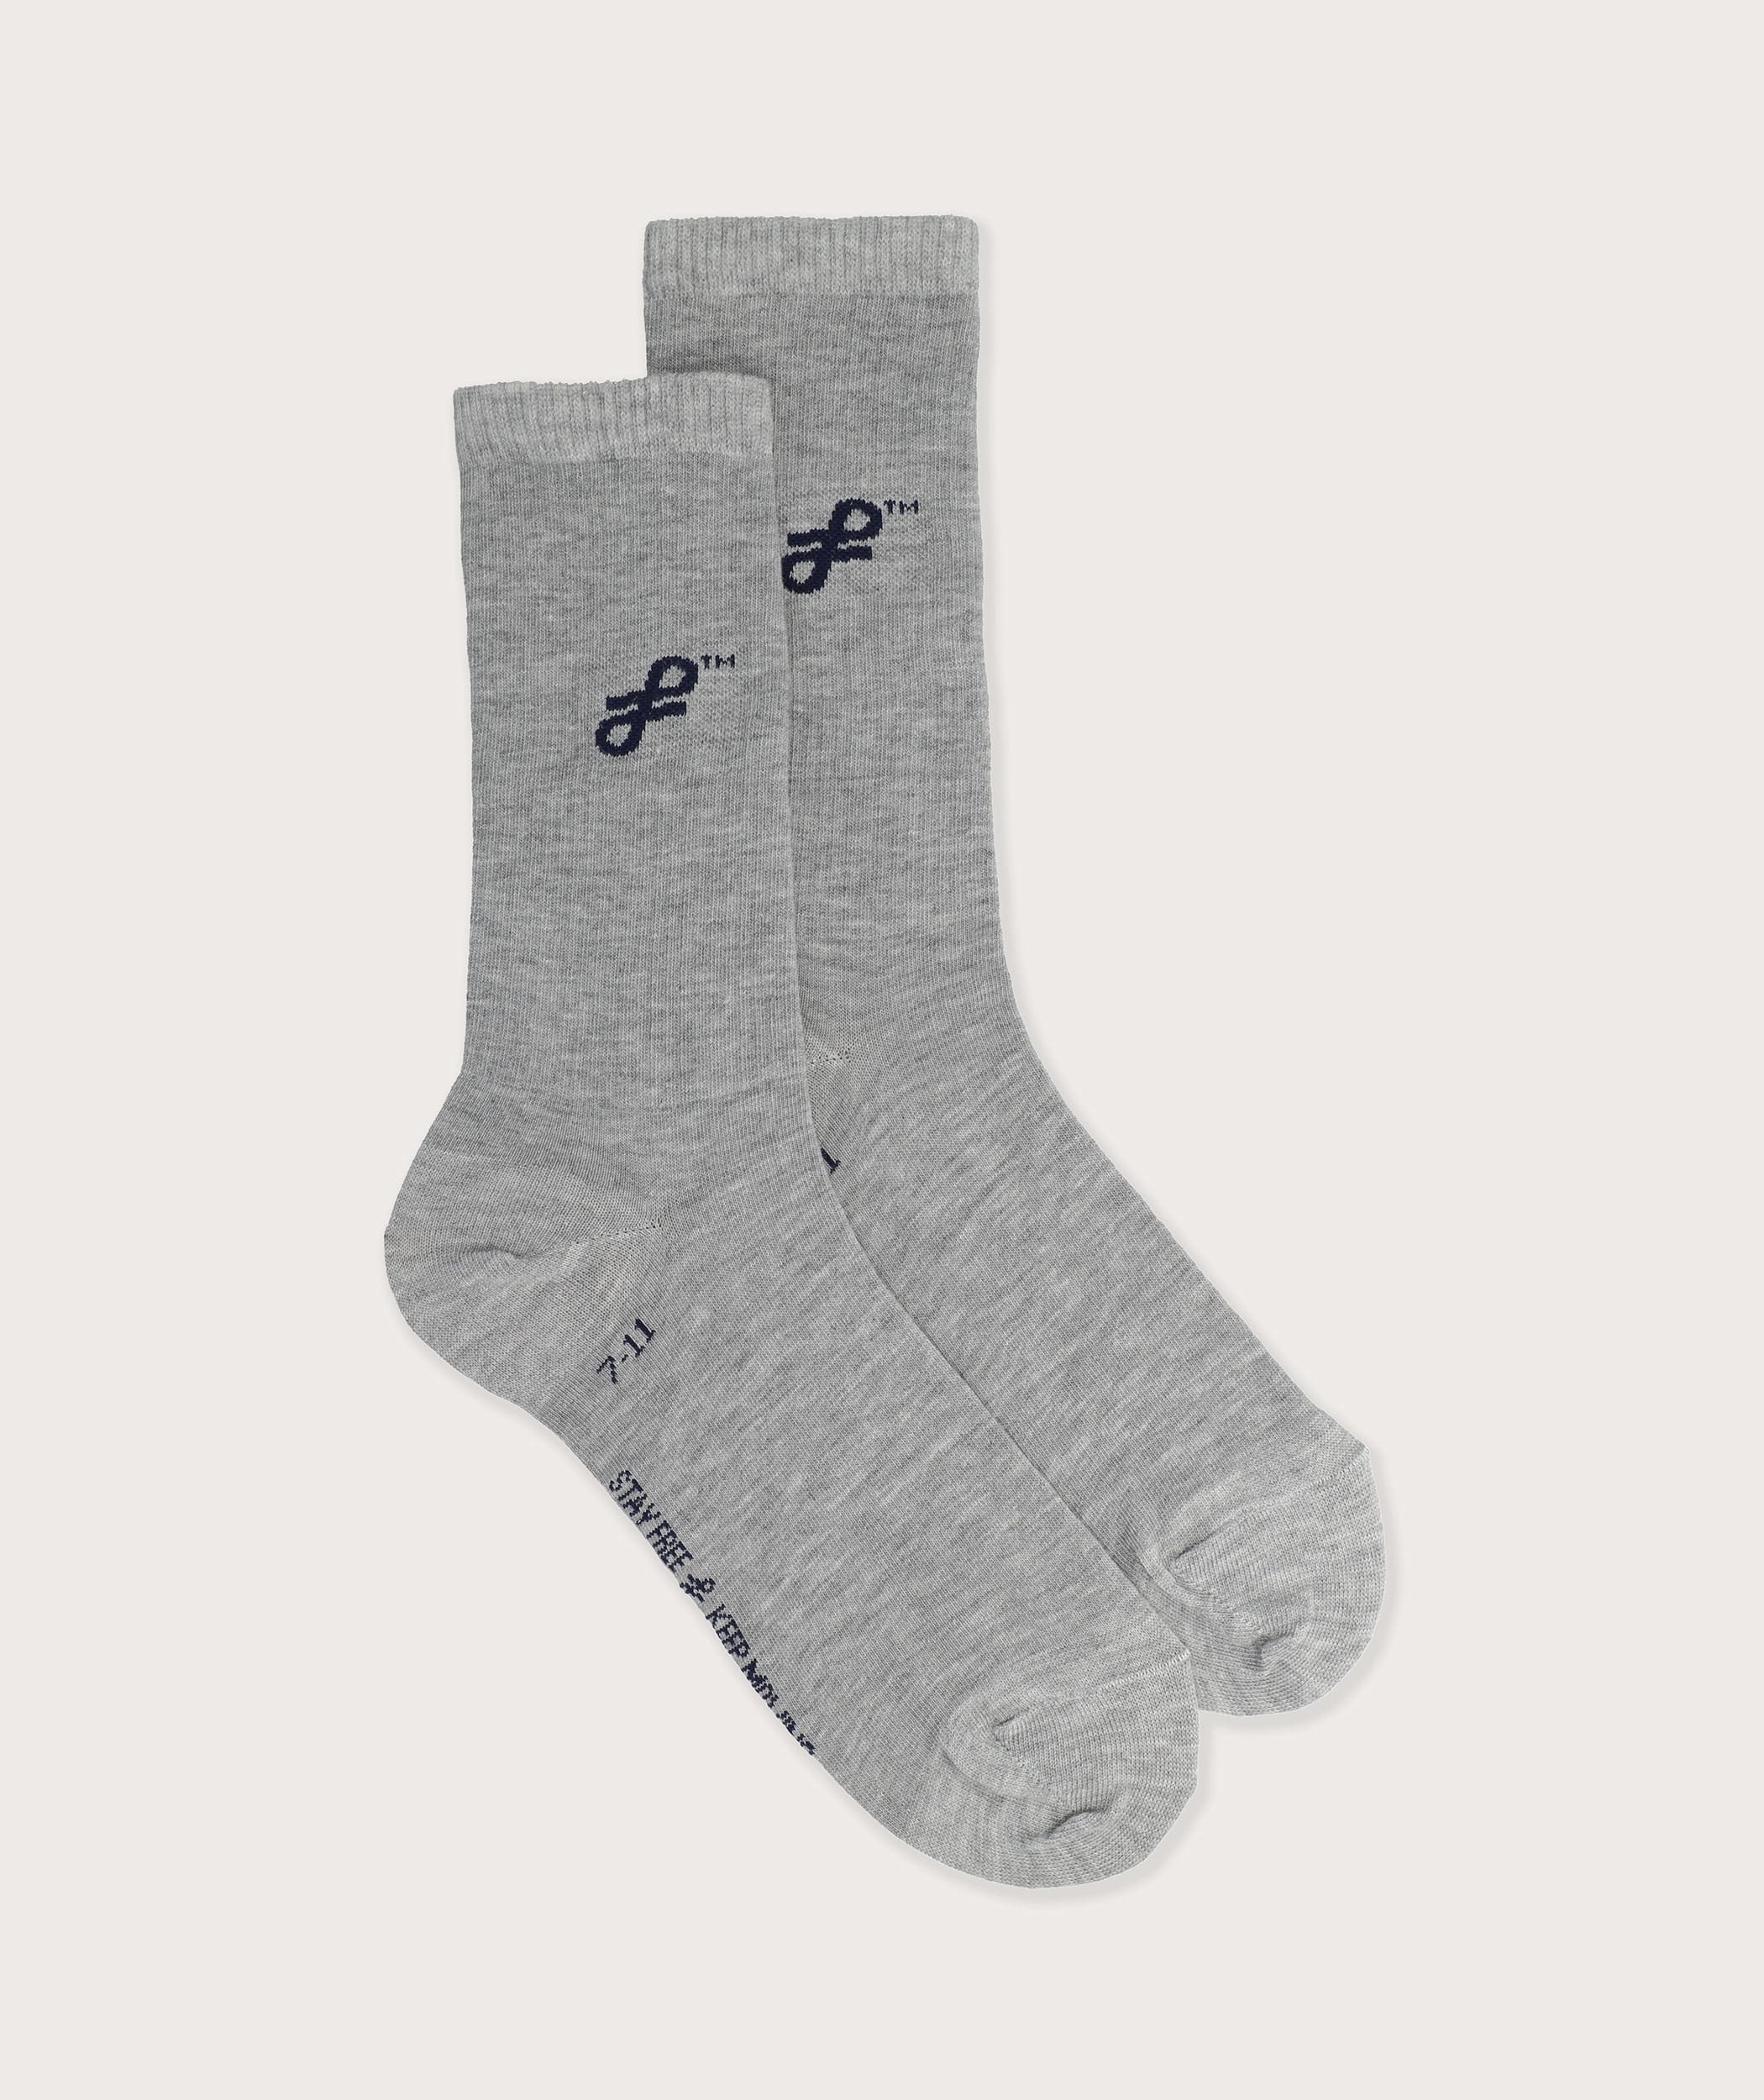 Socks FOM Crew Grey Melange/ Navy Knot  (Size 7-11)